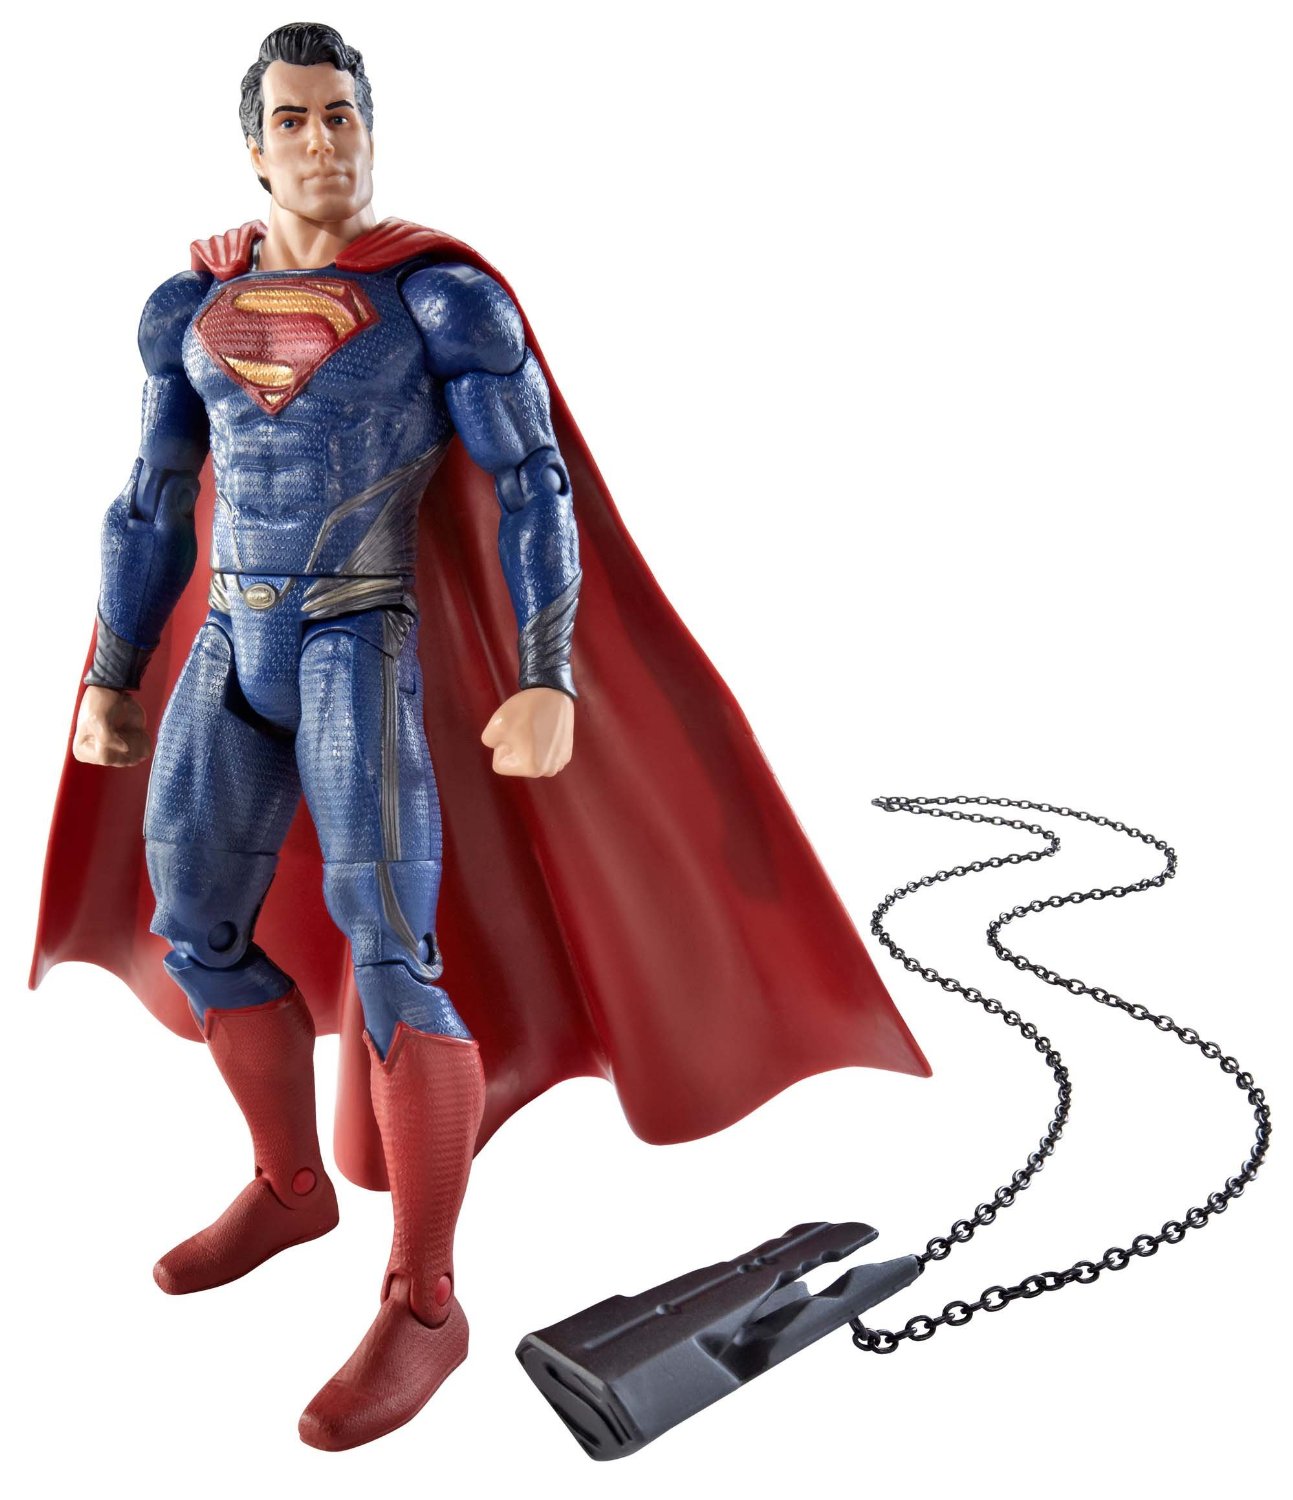 Movie Masters Superman: Man of Steel Superman Action Figure 